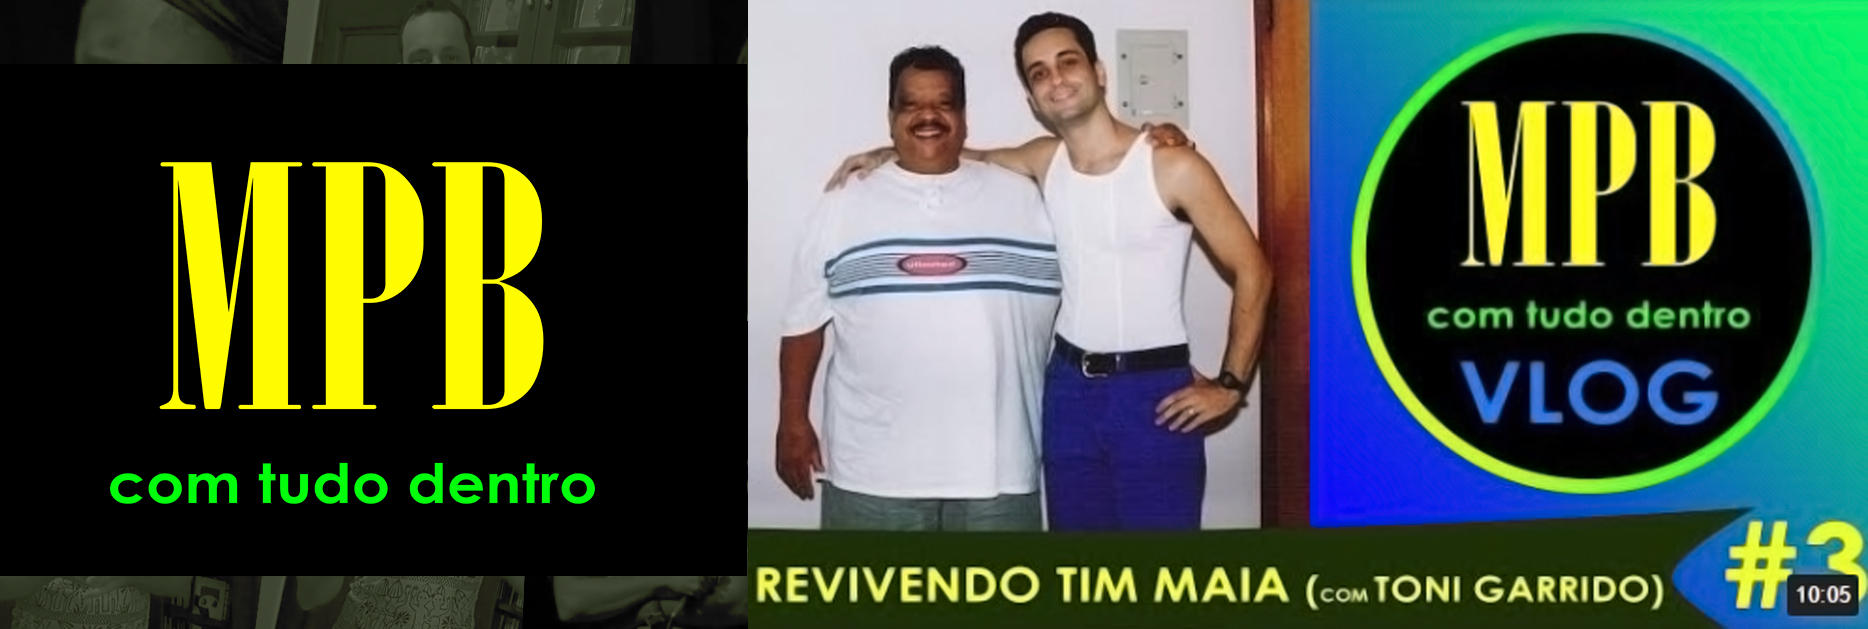 Revivendo Tim Maia Com Toni Garrido